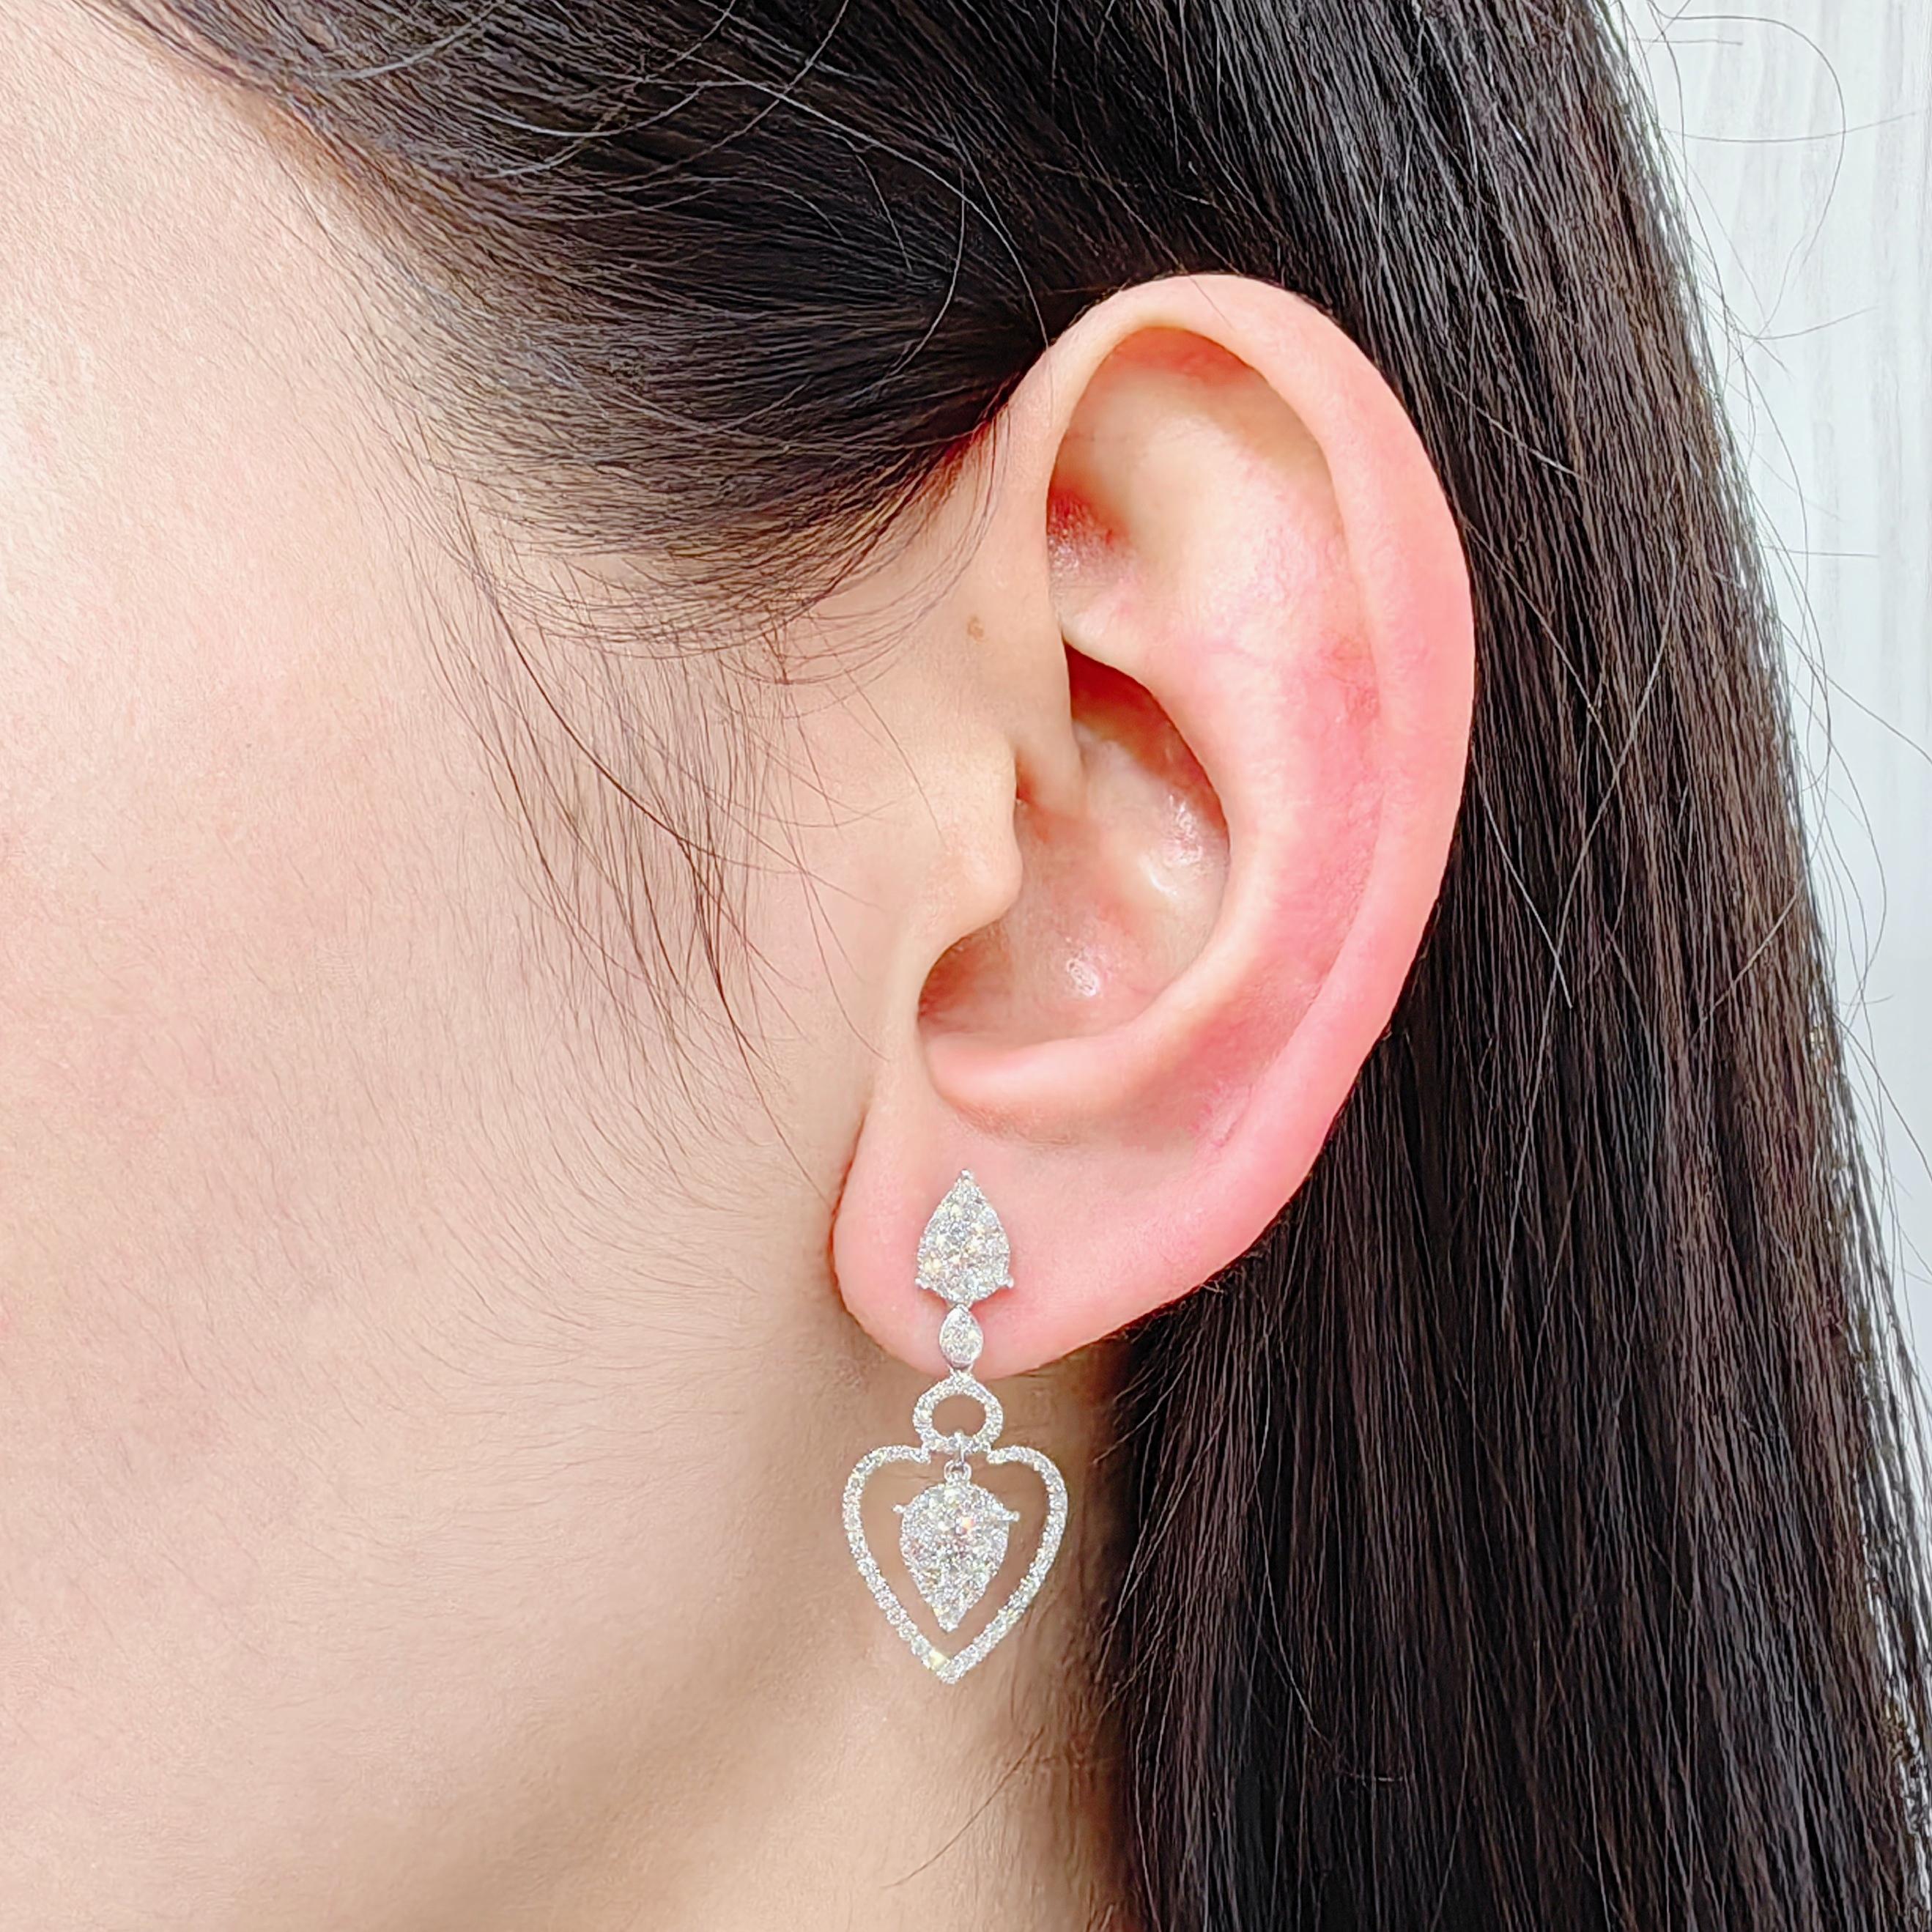 Triple Teardrop 1.69 Carat Diamond Dangling Earrings in 18K White Gold For Sale 10